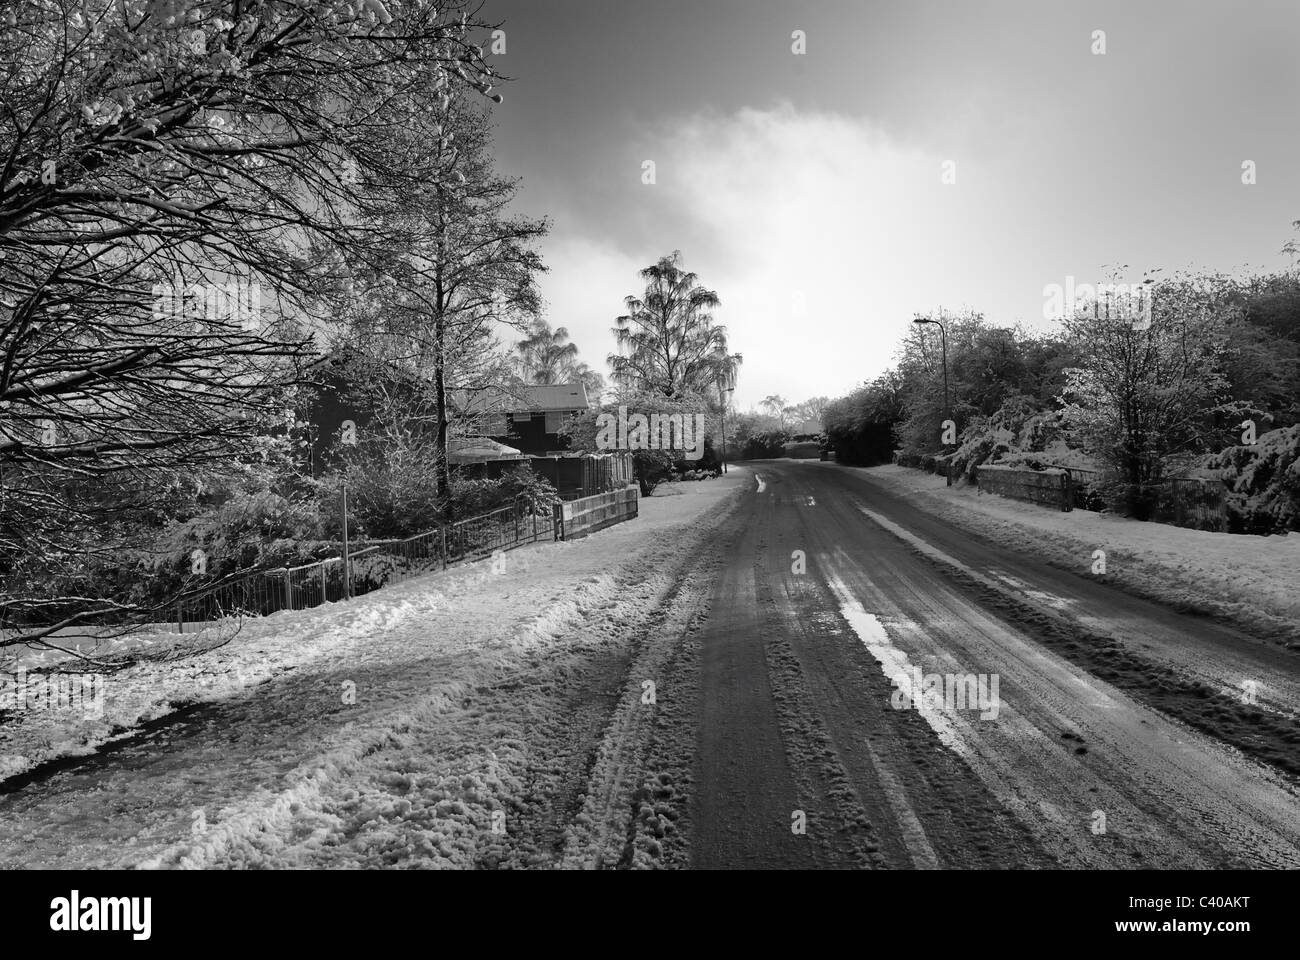 Strade ghiacciate. Nero/bianco fotografia di Guttridge Lane, Tadley, Hampshire, Inghilterra, UK, Regno Unito Foto Stock